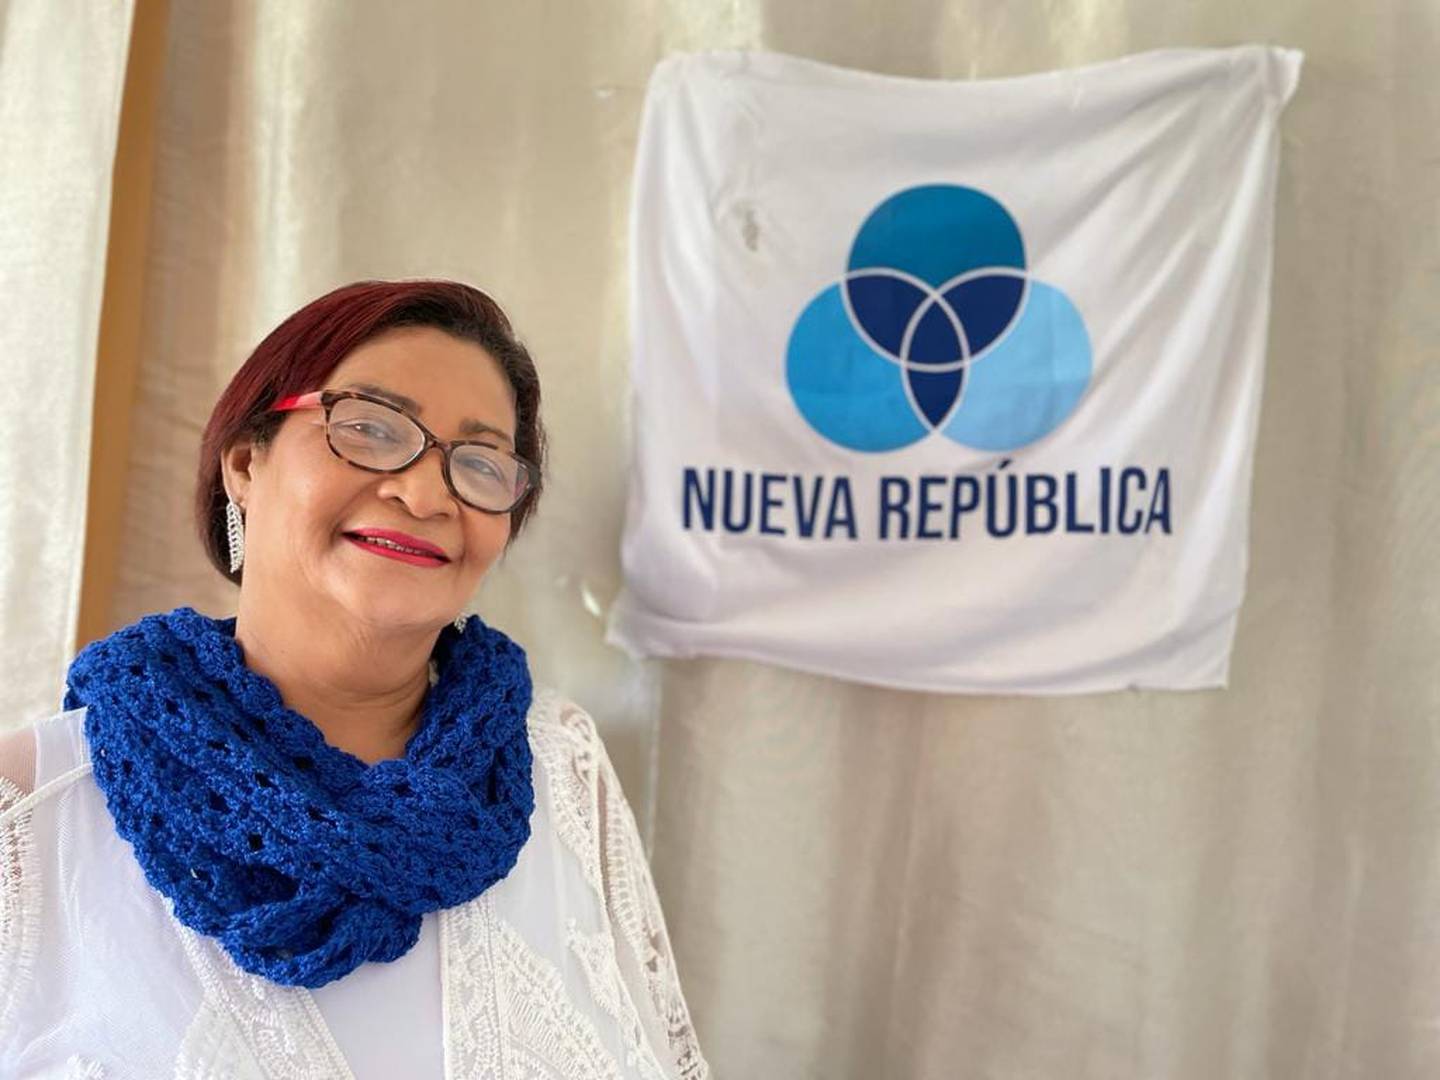 Sonia Alfaro Hay aparecerá en cinco papeletas en las elecciones municipales, incluyendo la de alcaldía de Jiménez e intendencia de Tucurrique. Foto: Tomada de Facebook